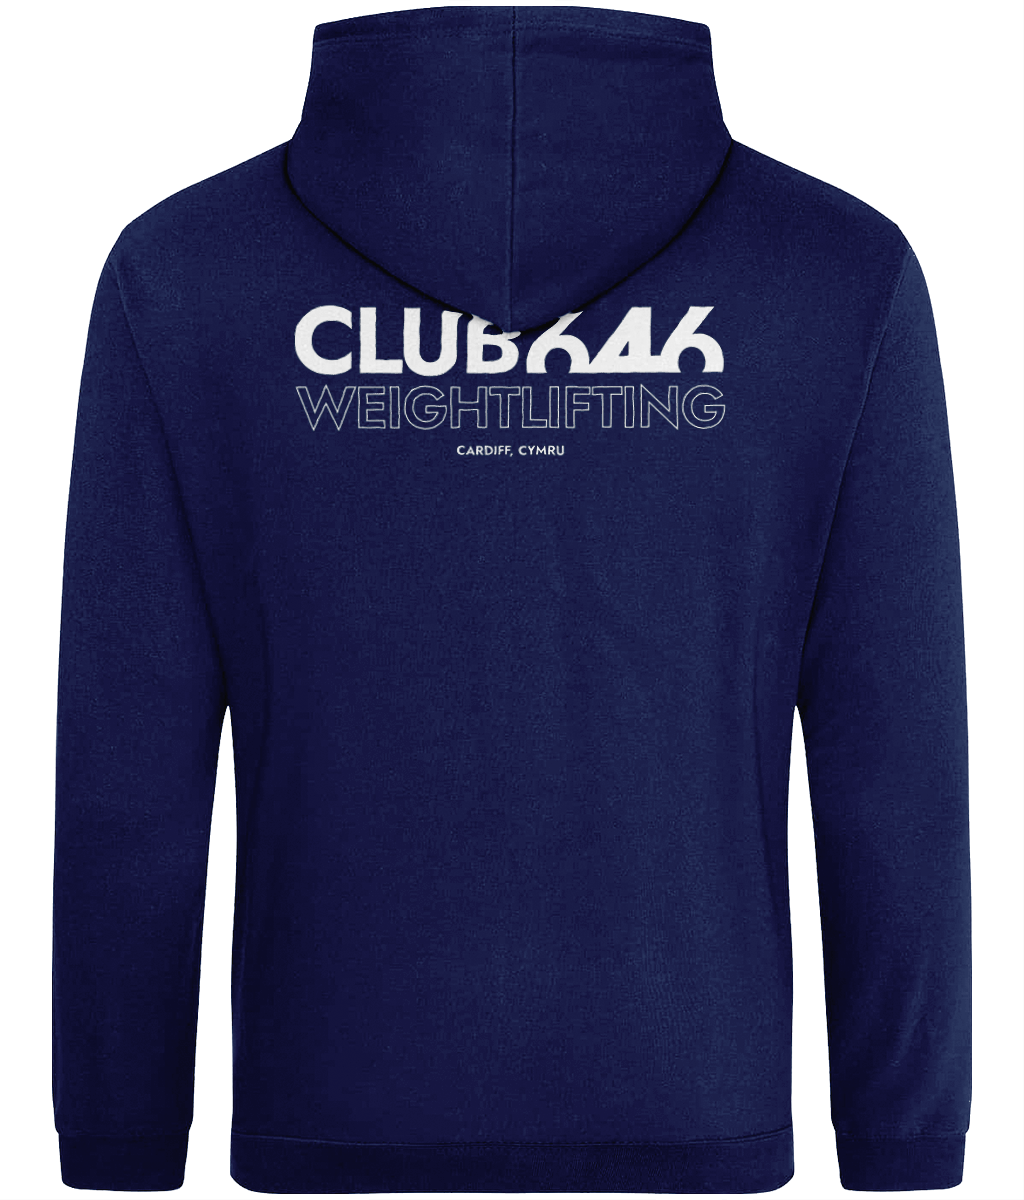 Club 646 collage hoodie